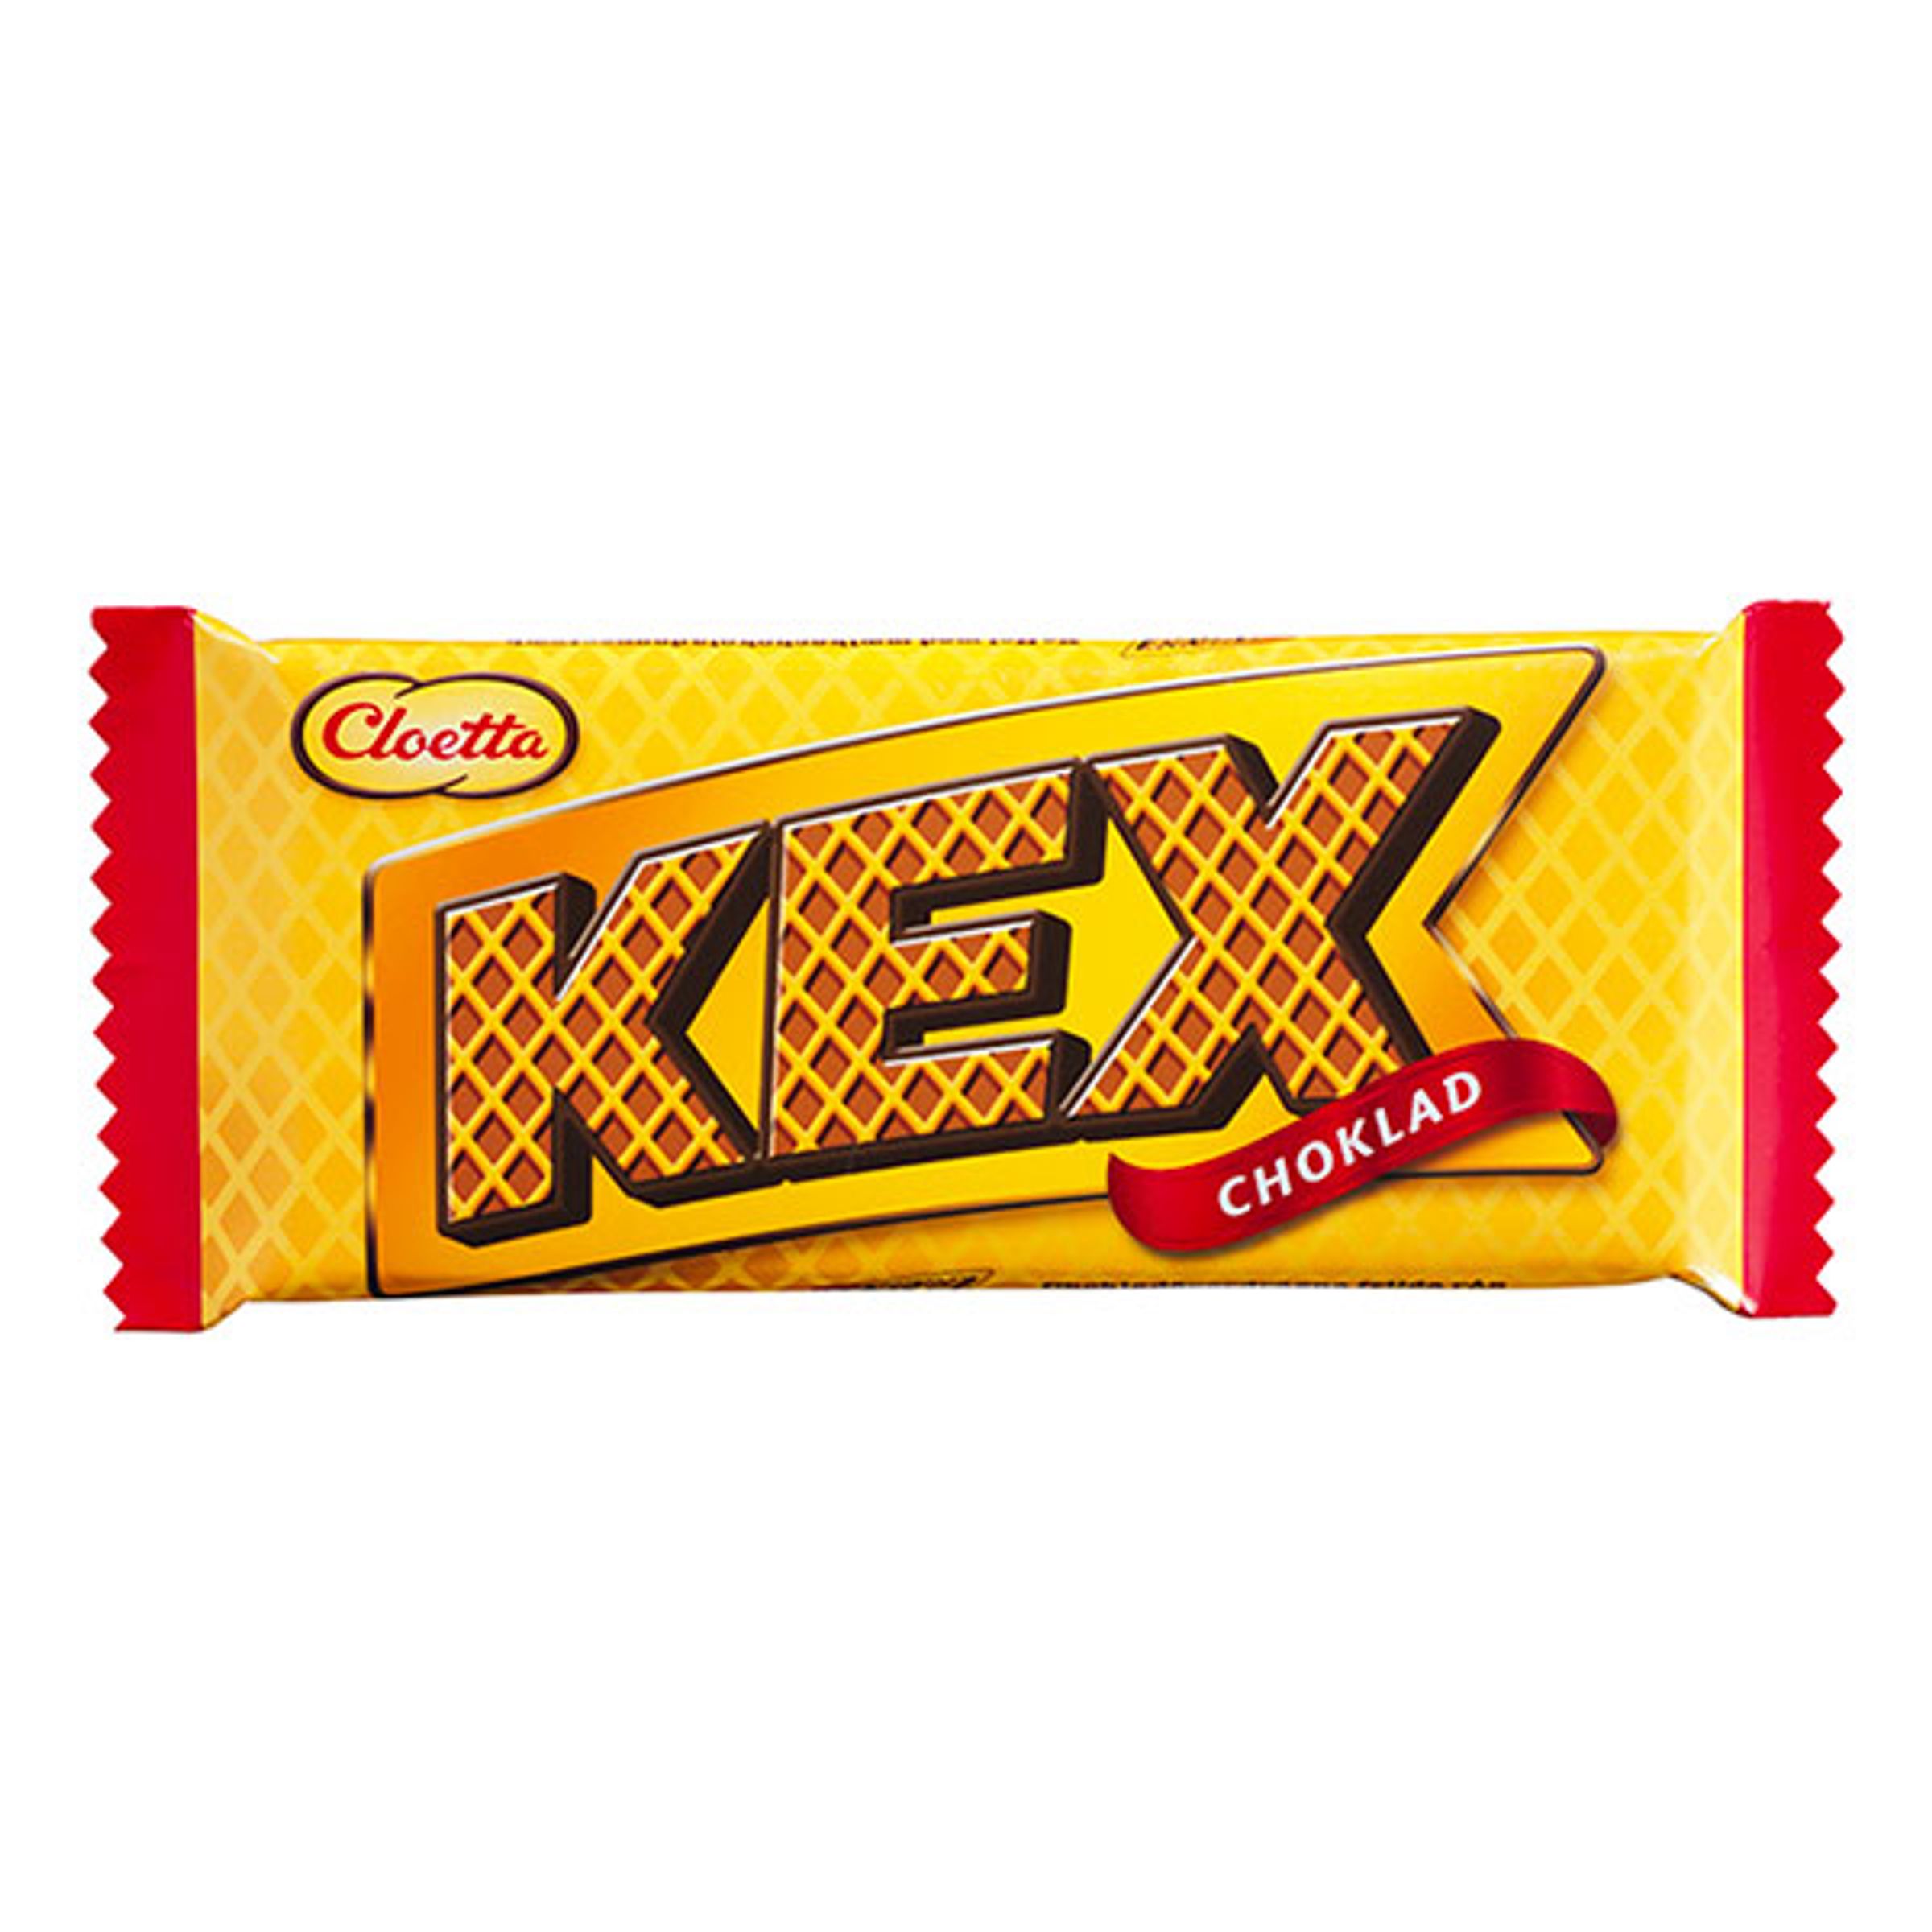 Kexchoklad Original - 60 gram